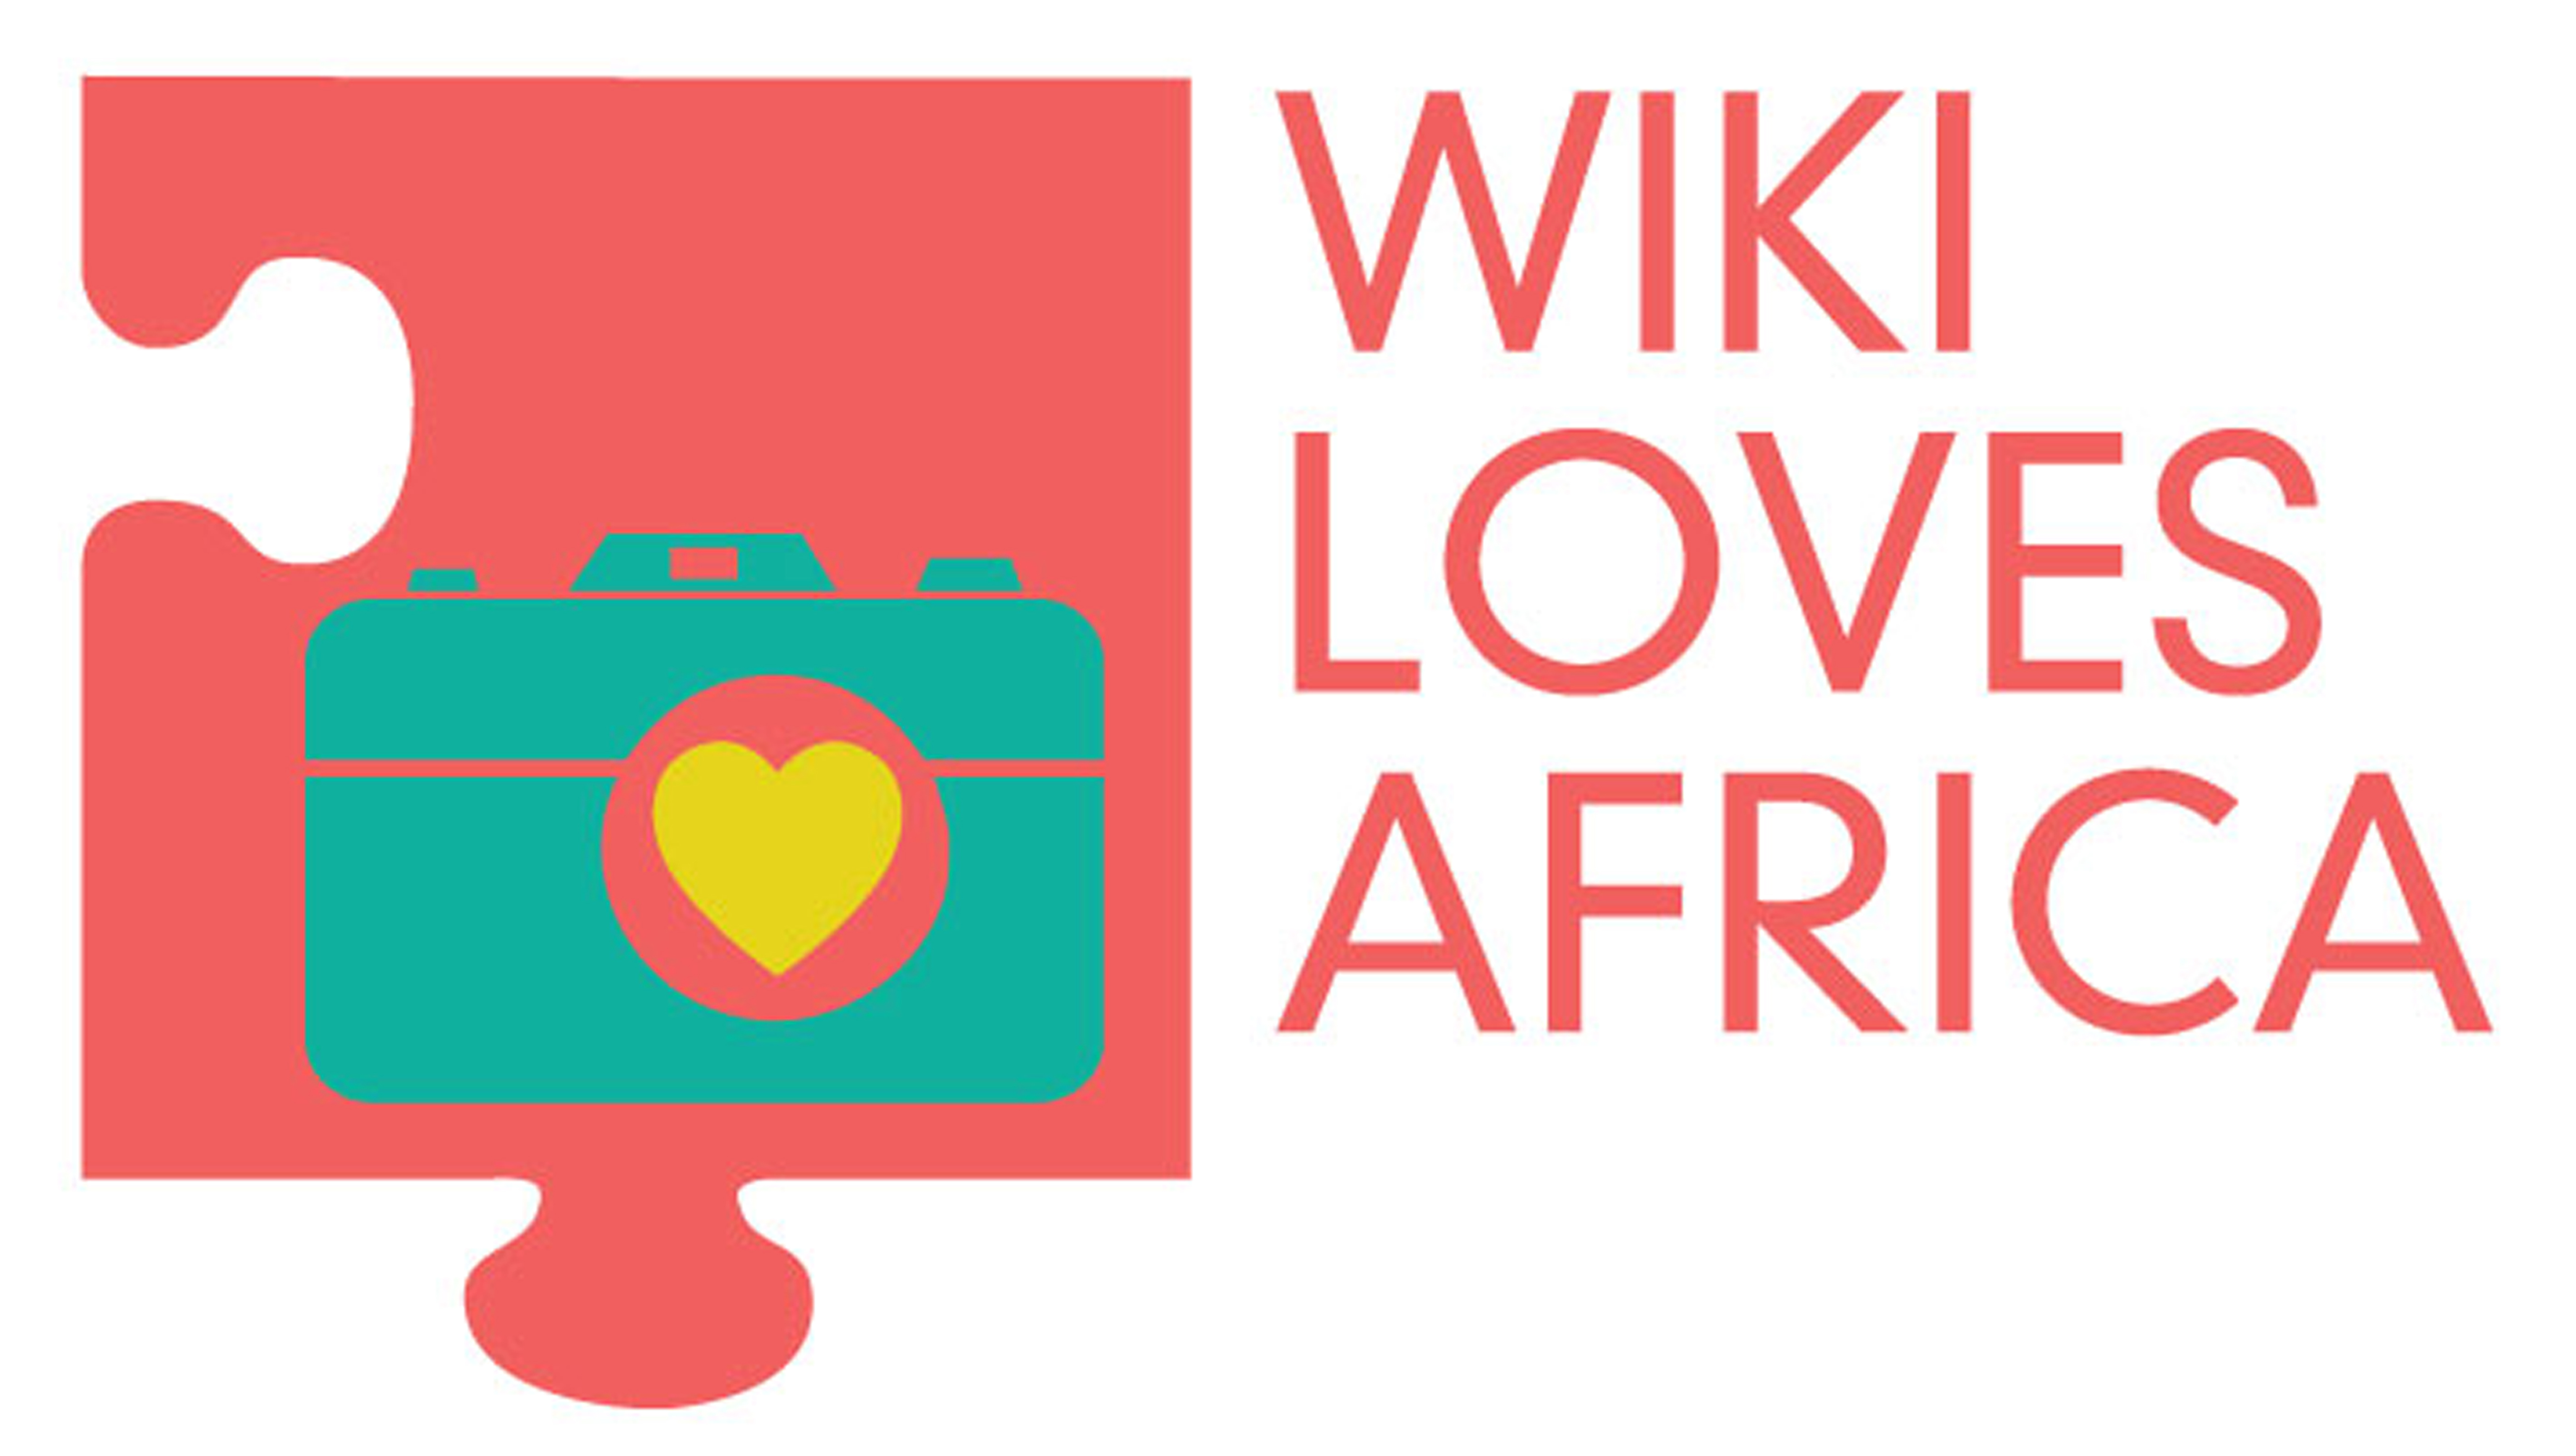 Вики лове. Fi & Hi Africa 2022 логотип. I Love Africa. Barancira.